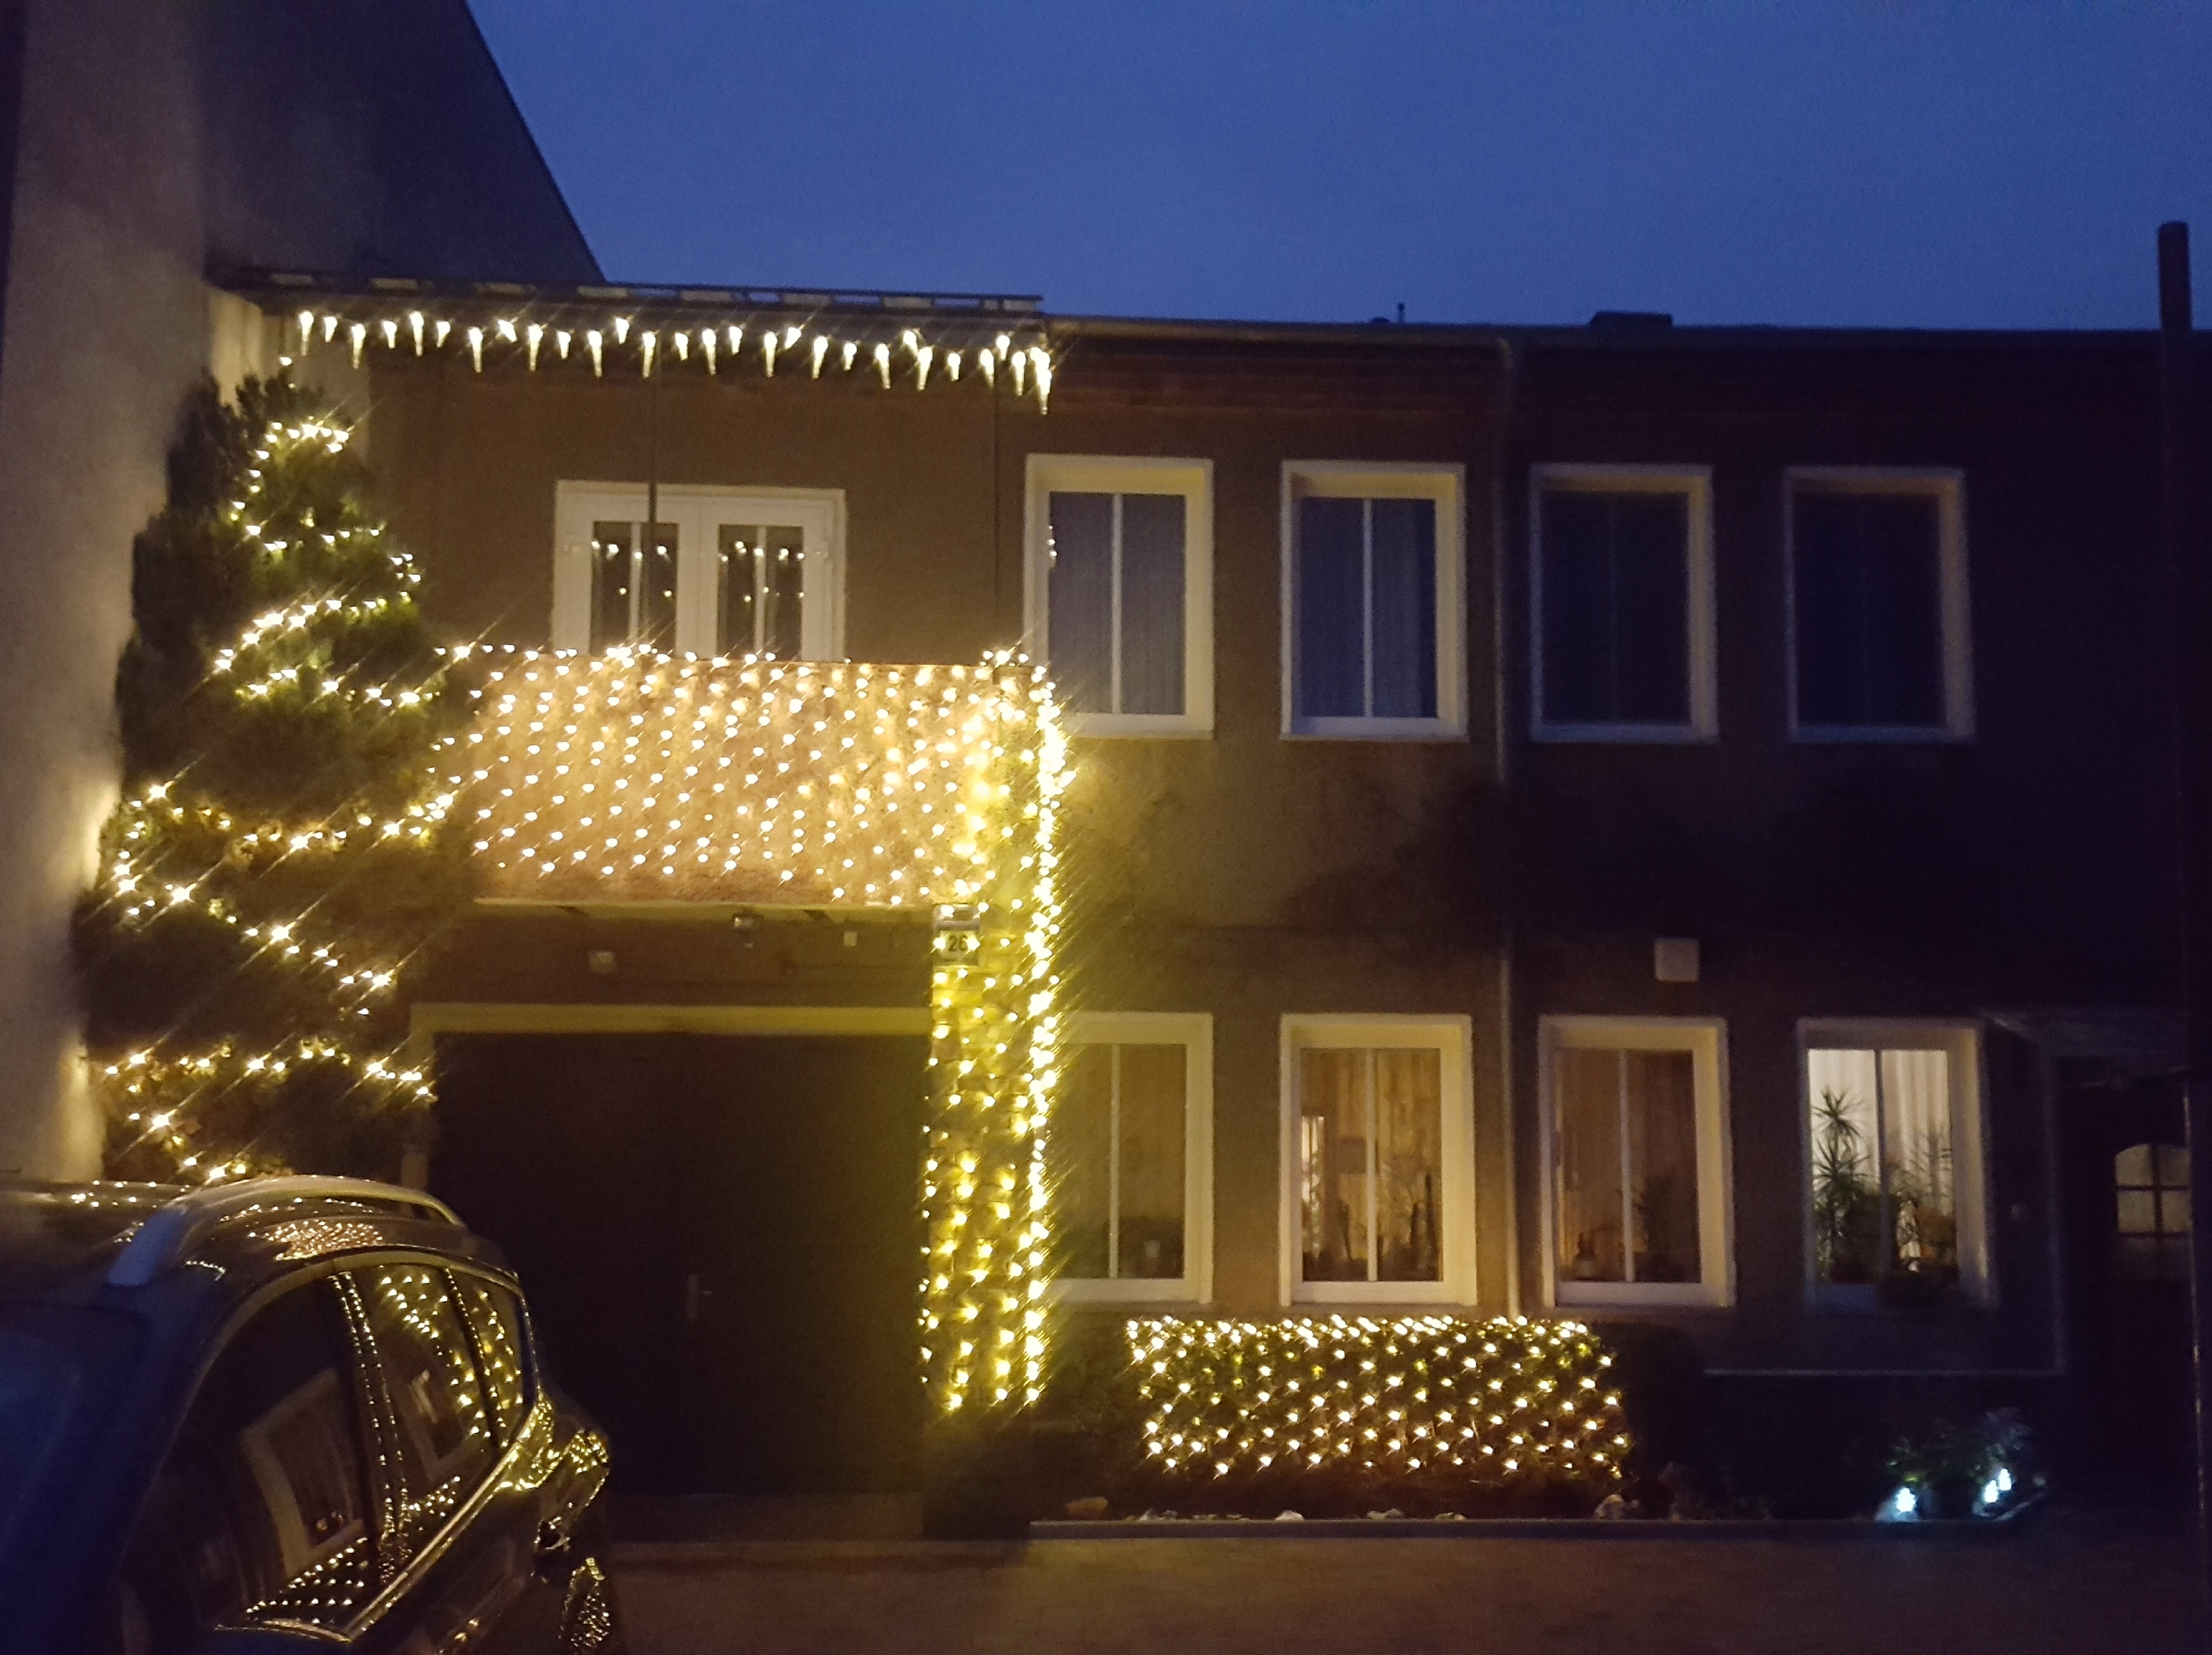 Haus zu Weihnachten